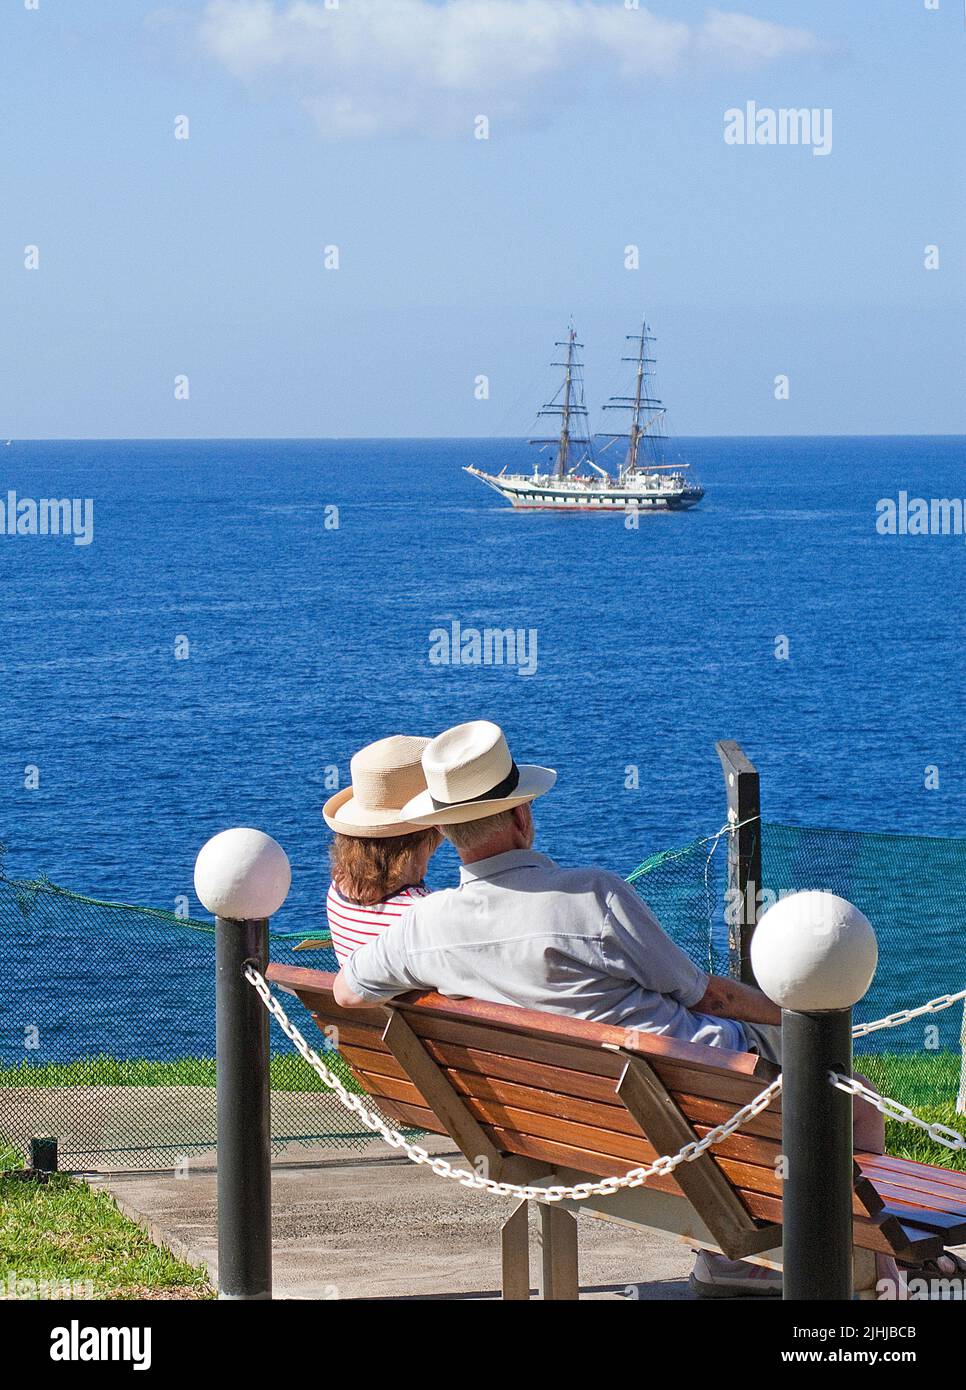 Couple de personnes âgées avec chapeaux de paille assis sur un banc et profitant de la vue sur la mer, Taurito, Grand canari, îles Canaries, Espagne, Europe Banque D'Images